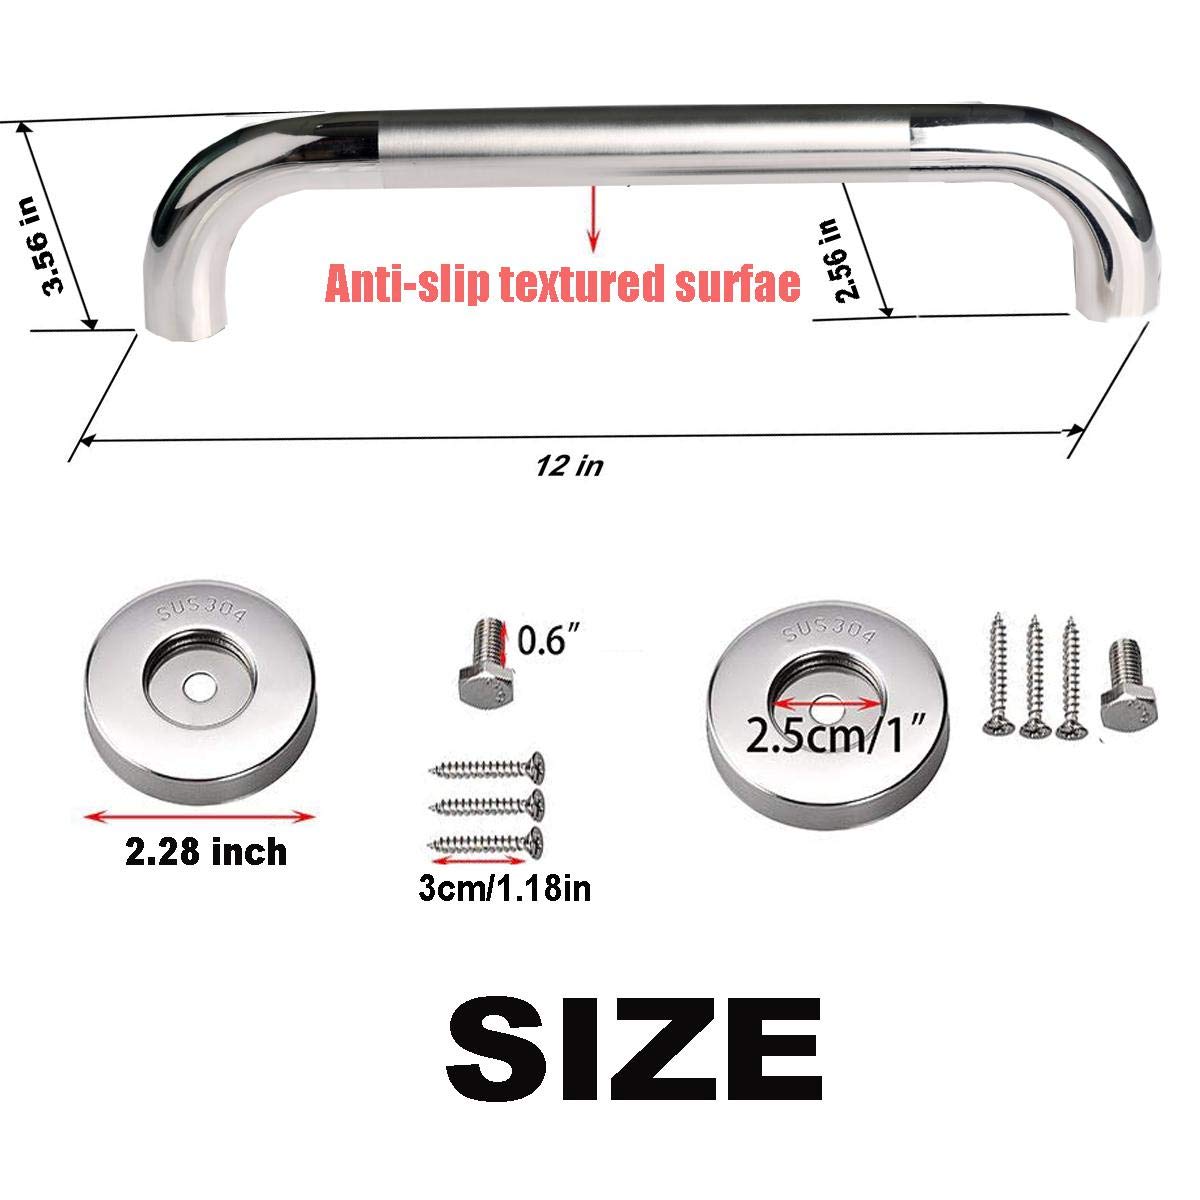 12 Inch Stainless Steel Chrome Shower Grab Bar, ZUEXT Bathroom Balance Bar, Safety Hand Rail Support, Handicap Elderly Injury Senior Bath Assist Handle